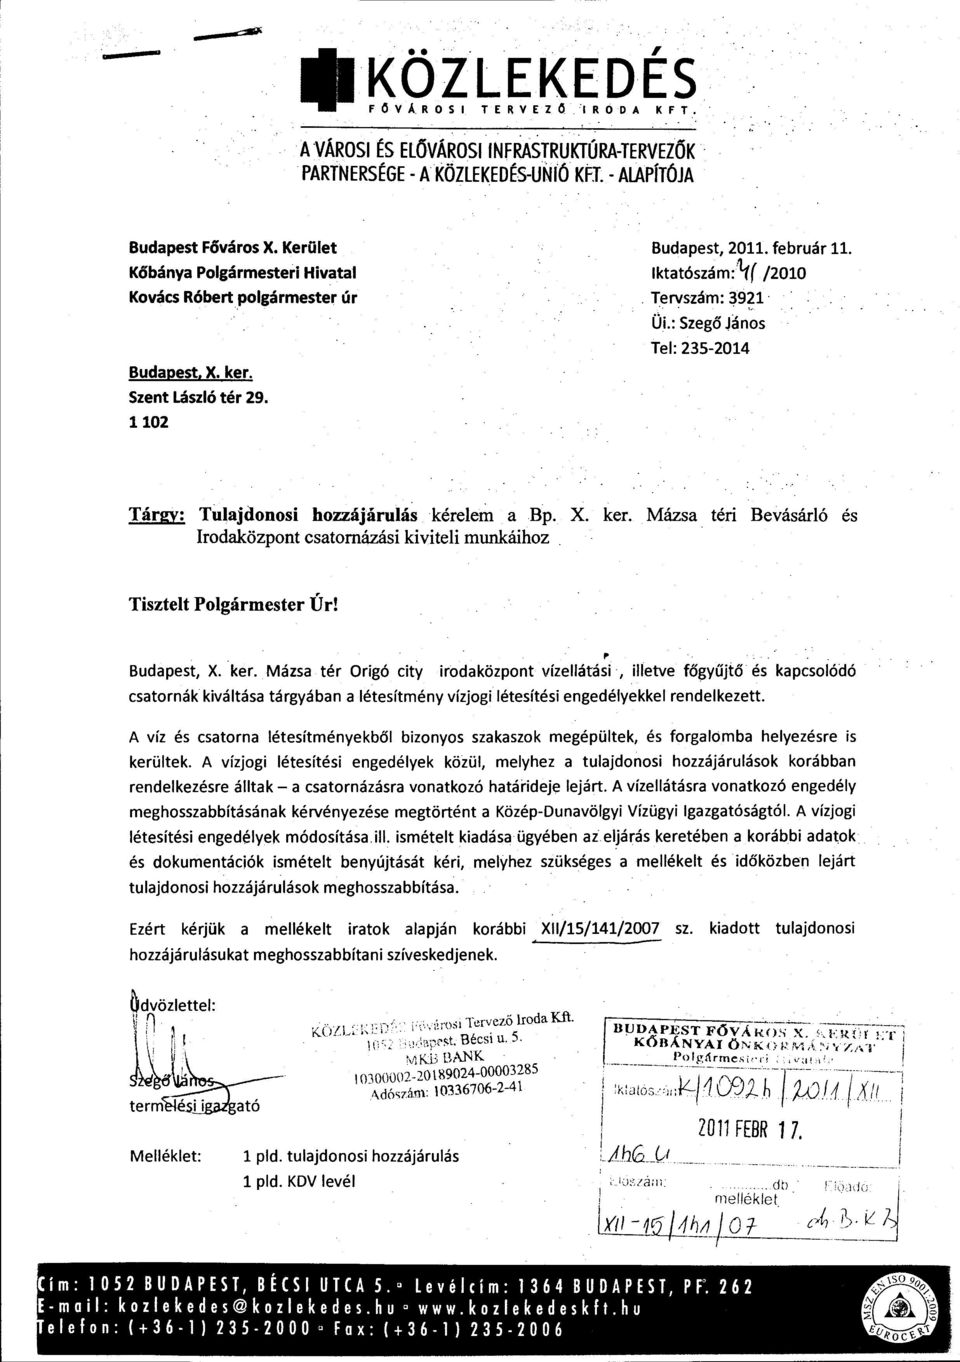 ÜL: Szegő János Tel: 235-2014 Tárgy: Tulajdonosi hozzájárulás kérelem a Bp. X. ker.